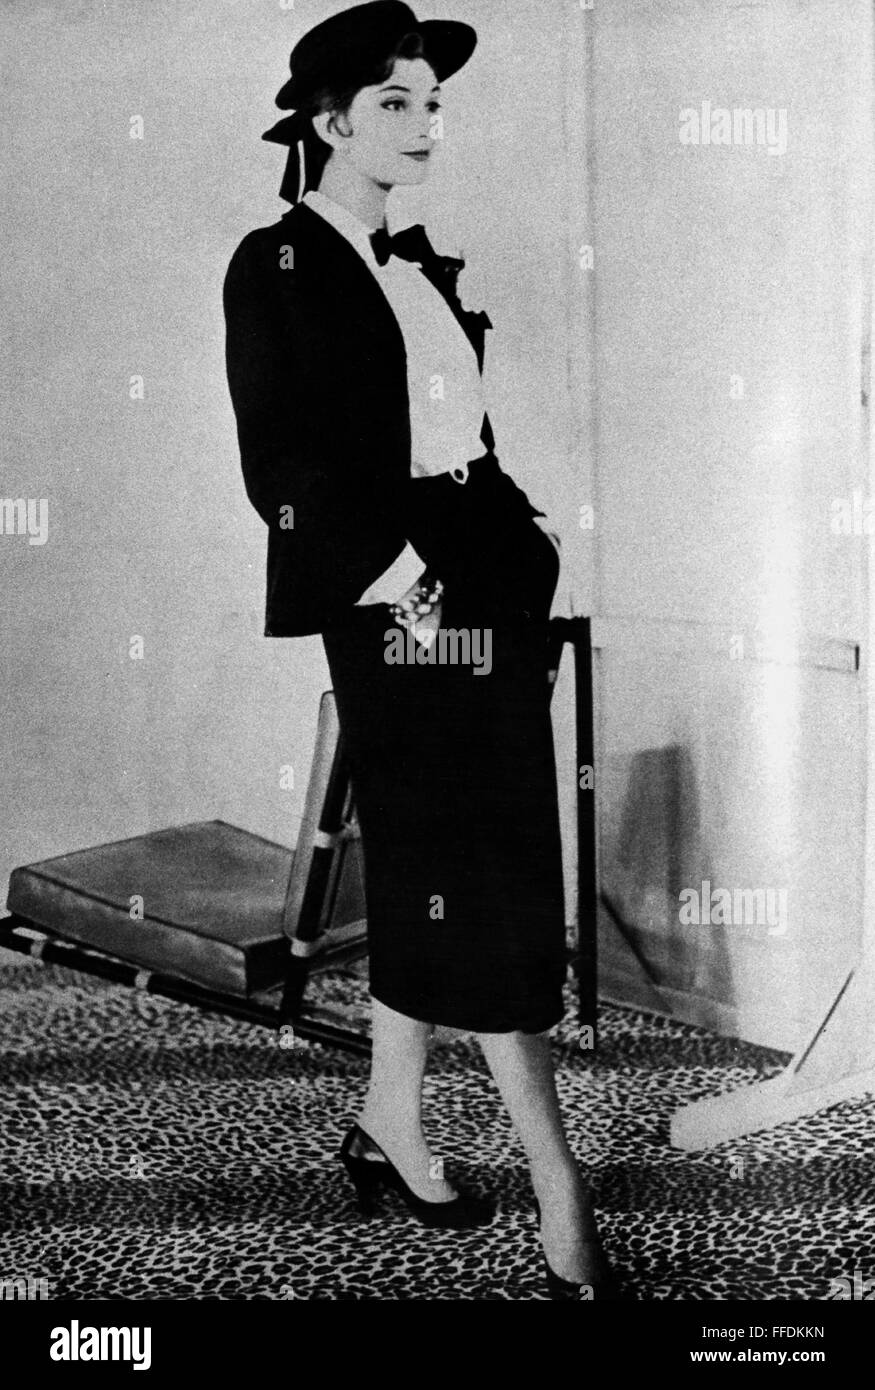 CHANEL-KOSTÜM. /nWoman Modellierung einen Anzug von Coco Chanel, Mitte des  20. Jahrhunderts entworfen Stockfotografie - Alamy